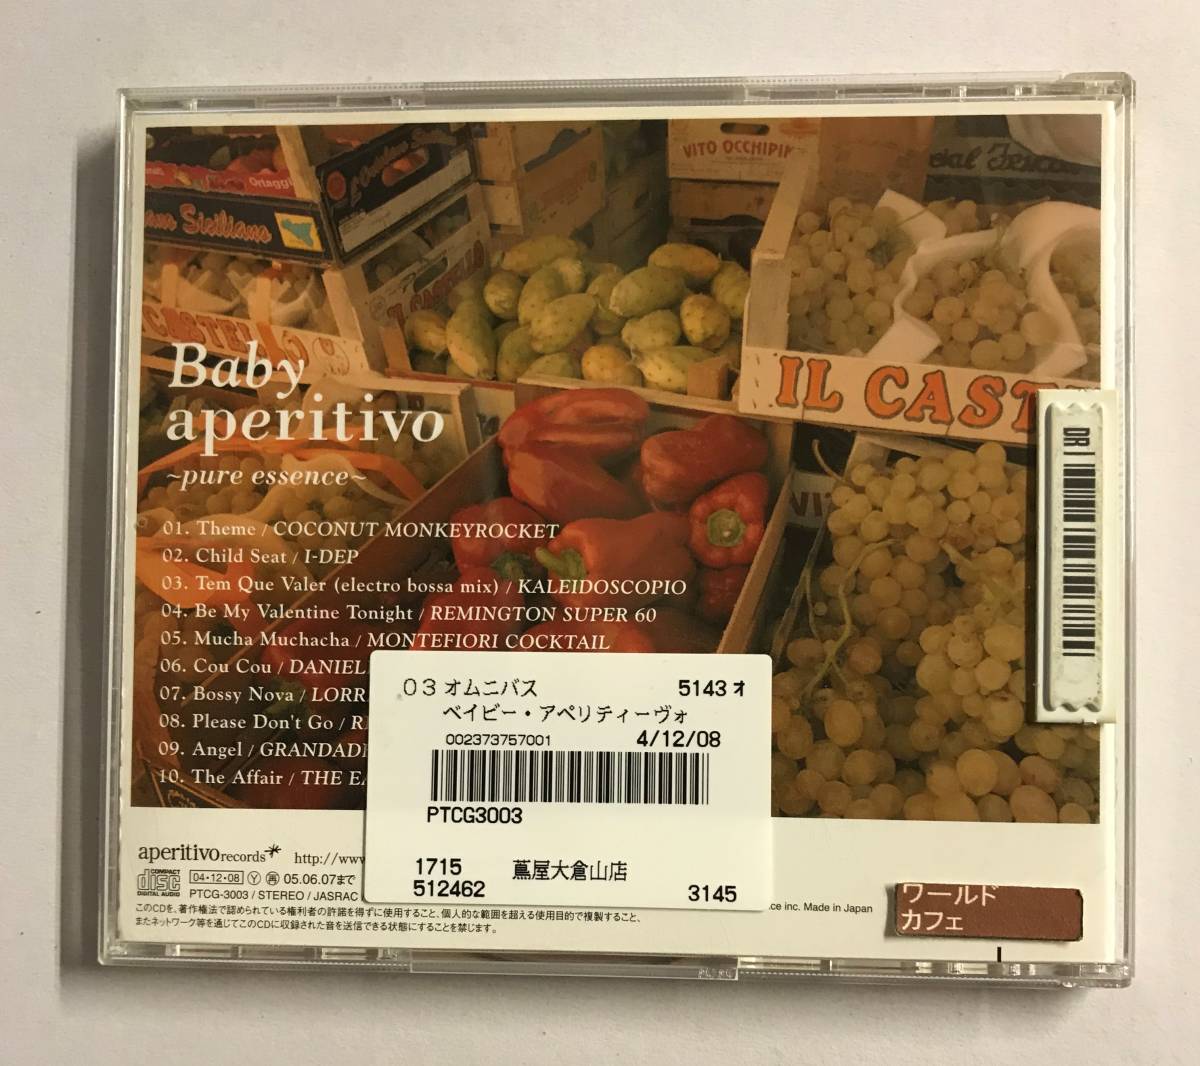 【CD】ベイビー・アペリティーボ~ピュア・エッセンス~ オムニバス【レンタル落ち】@CD-18_画像2